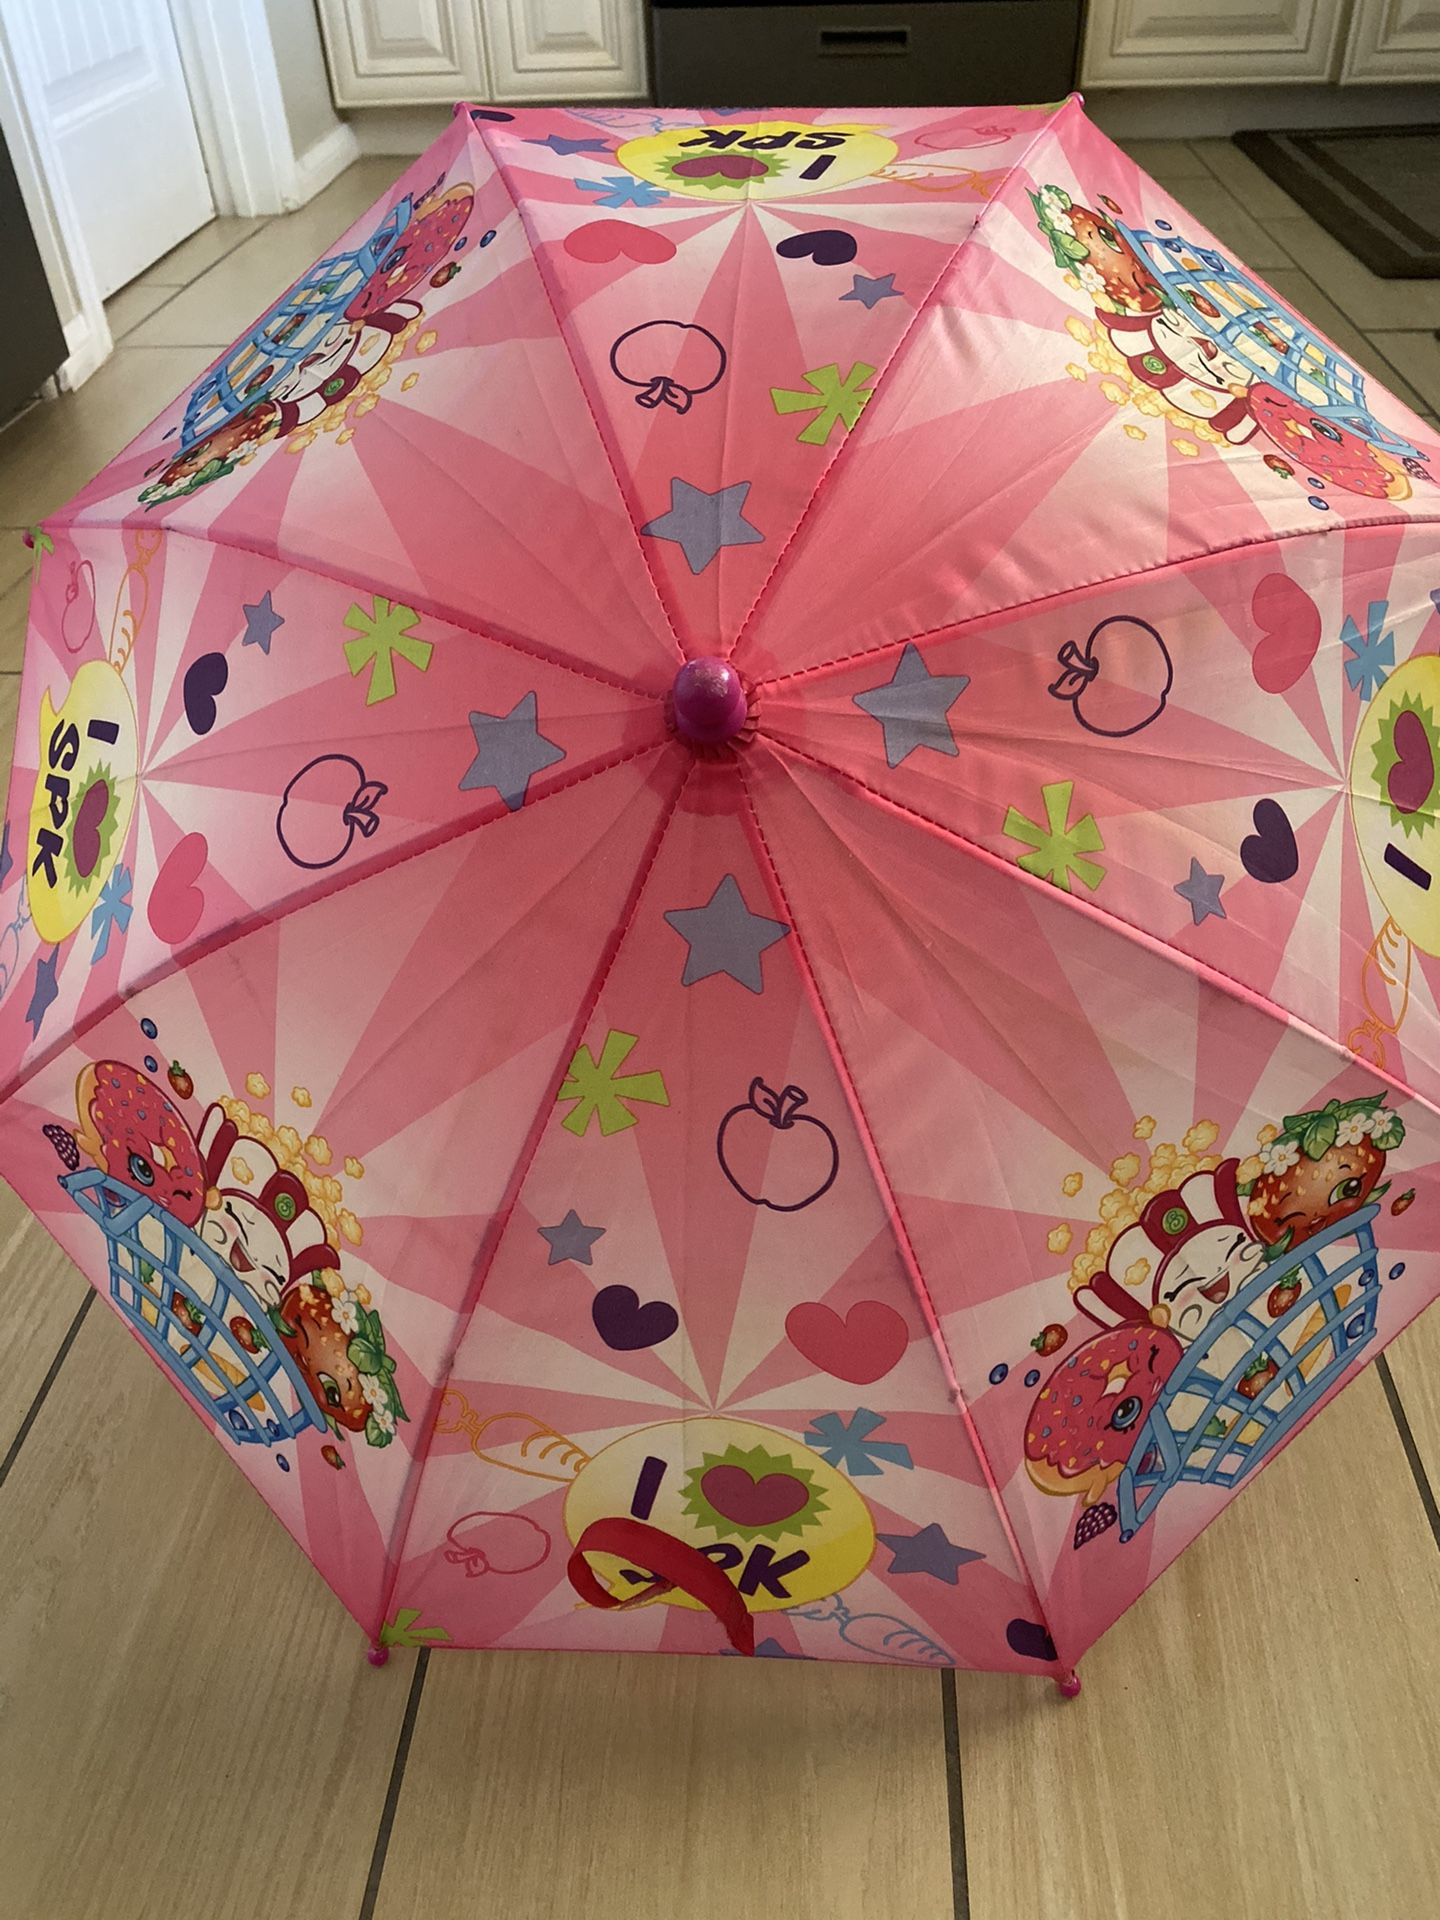 Shopkins umbrella